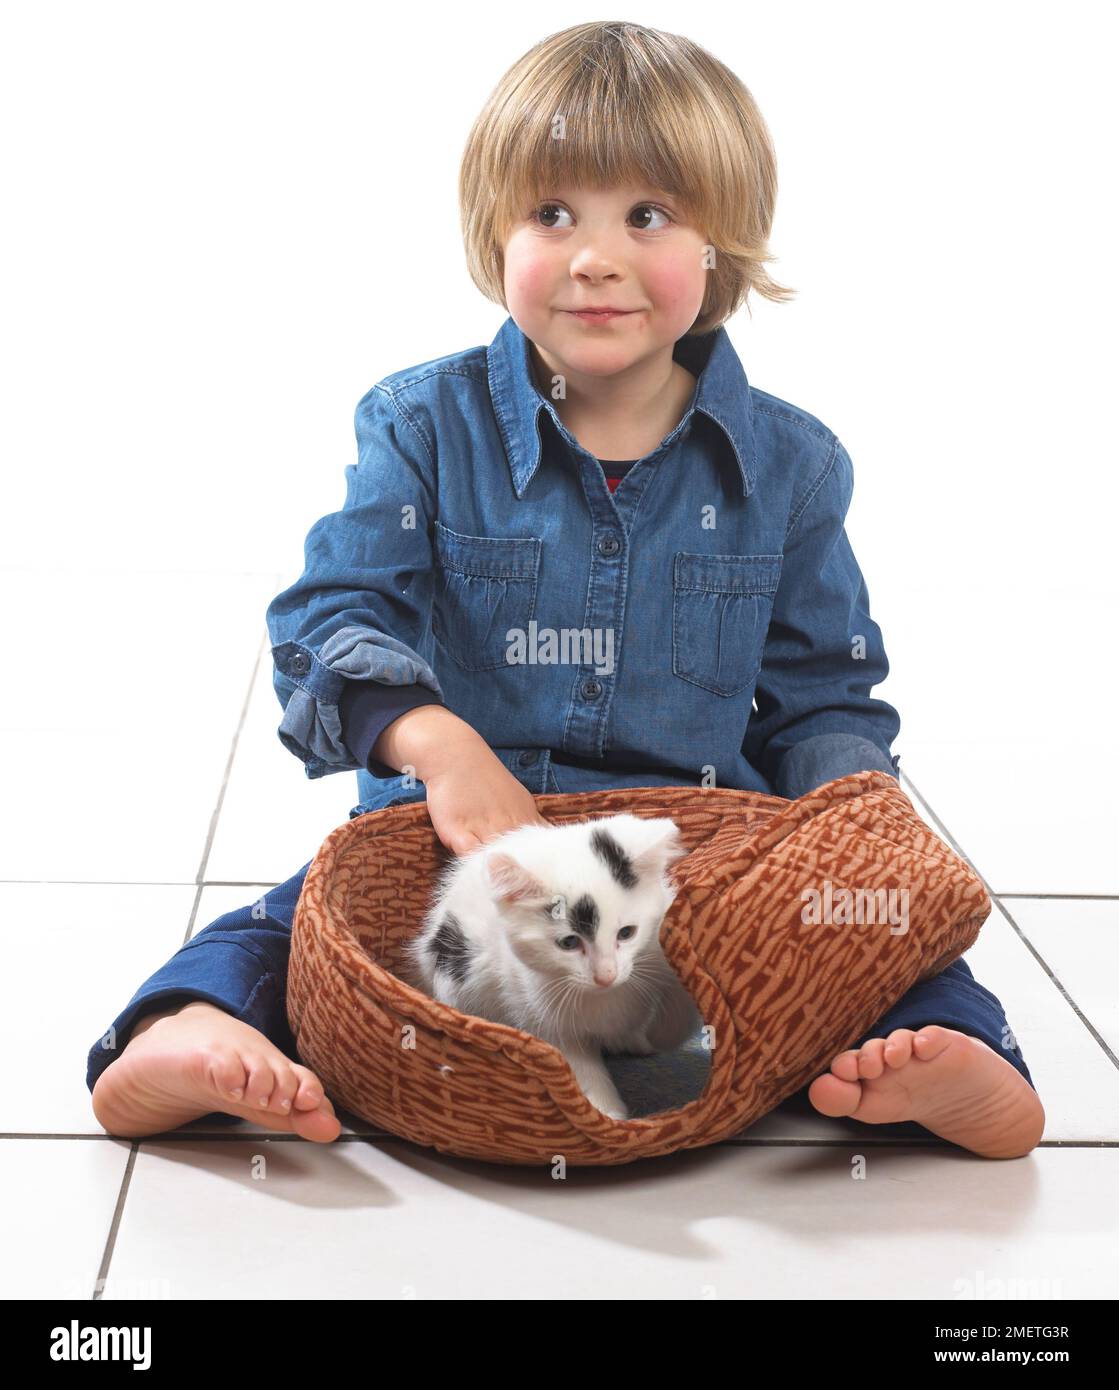 Garçon assis avec chaton dans animal panier entre ses jambes, 3 ans Banque D'Images